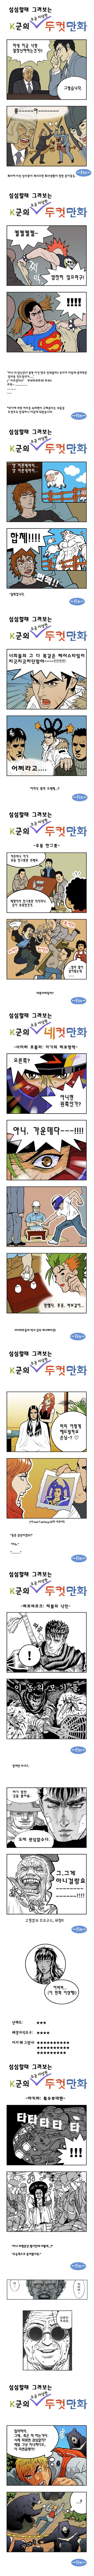 걸작품 - K군의 조금 이상한 두컷 만화